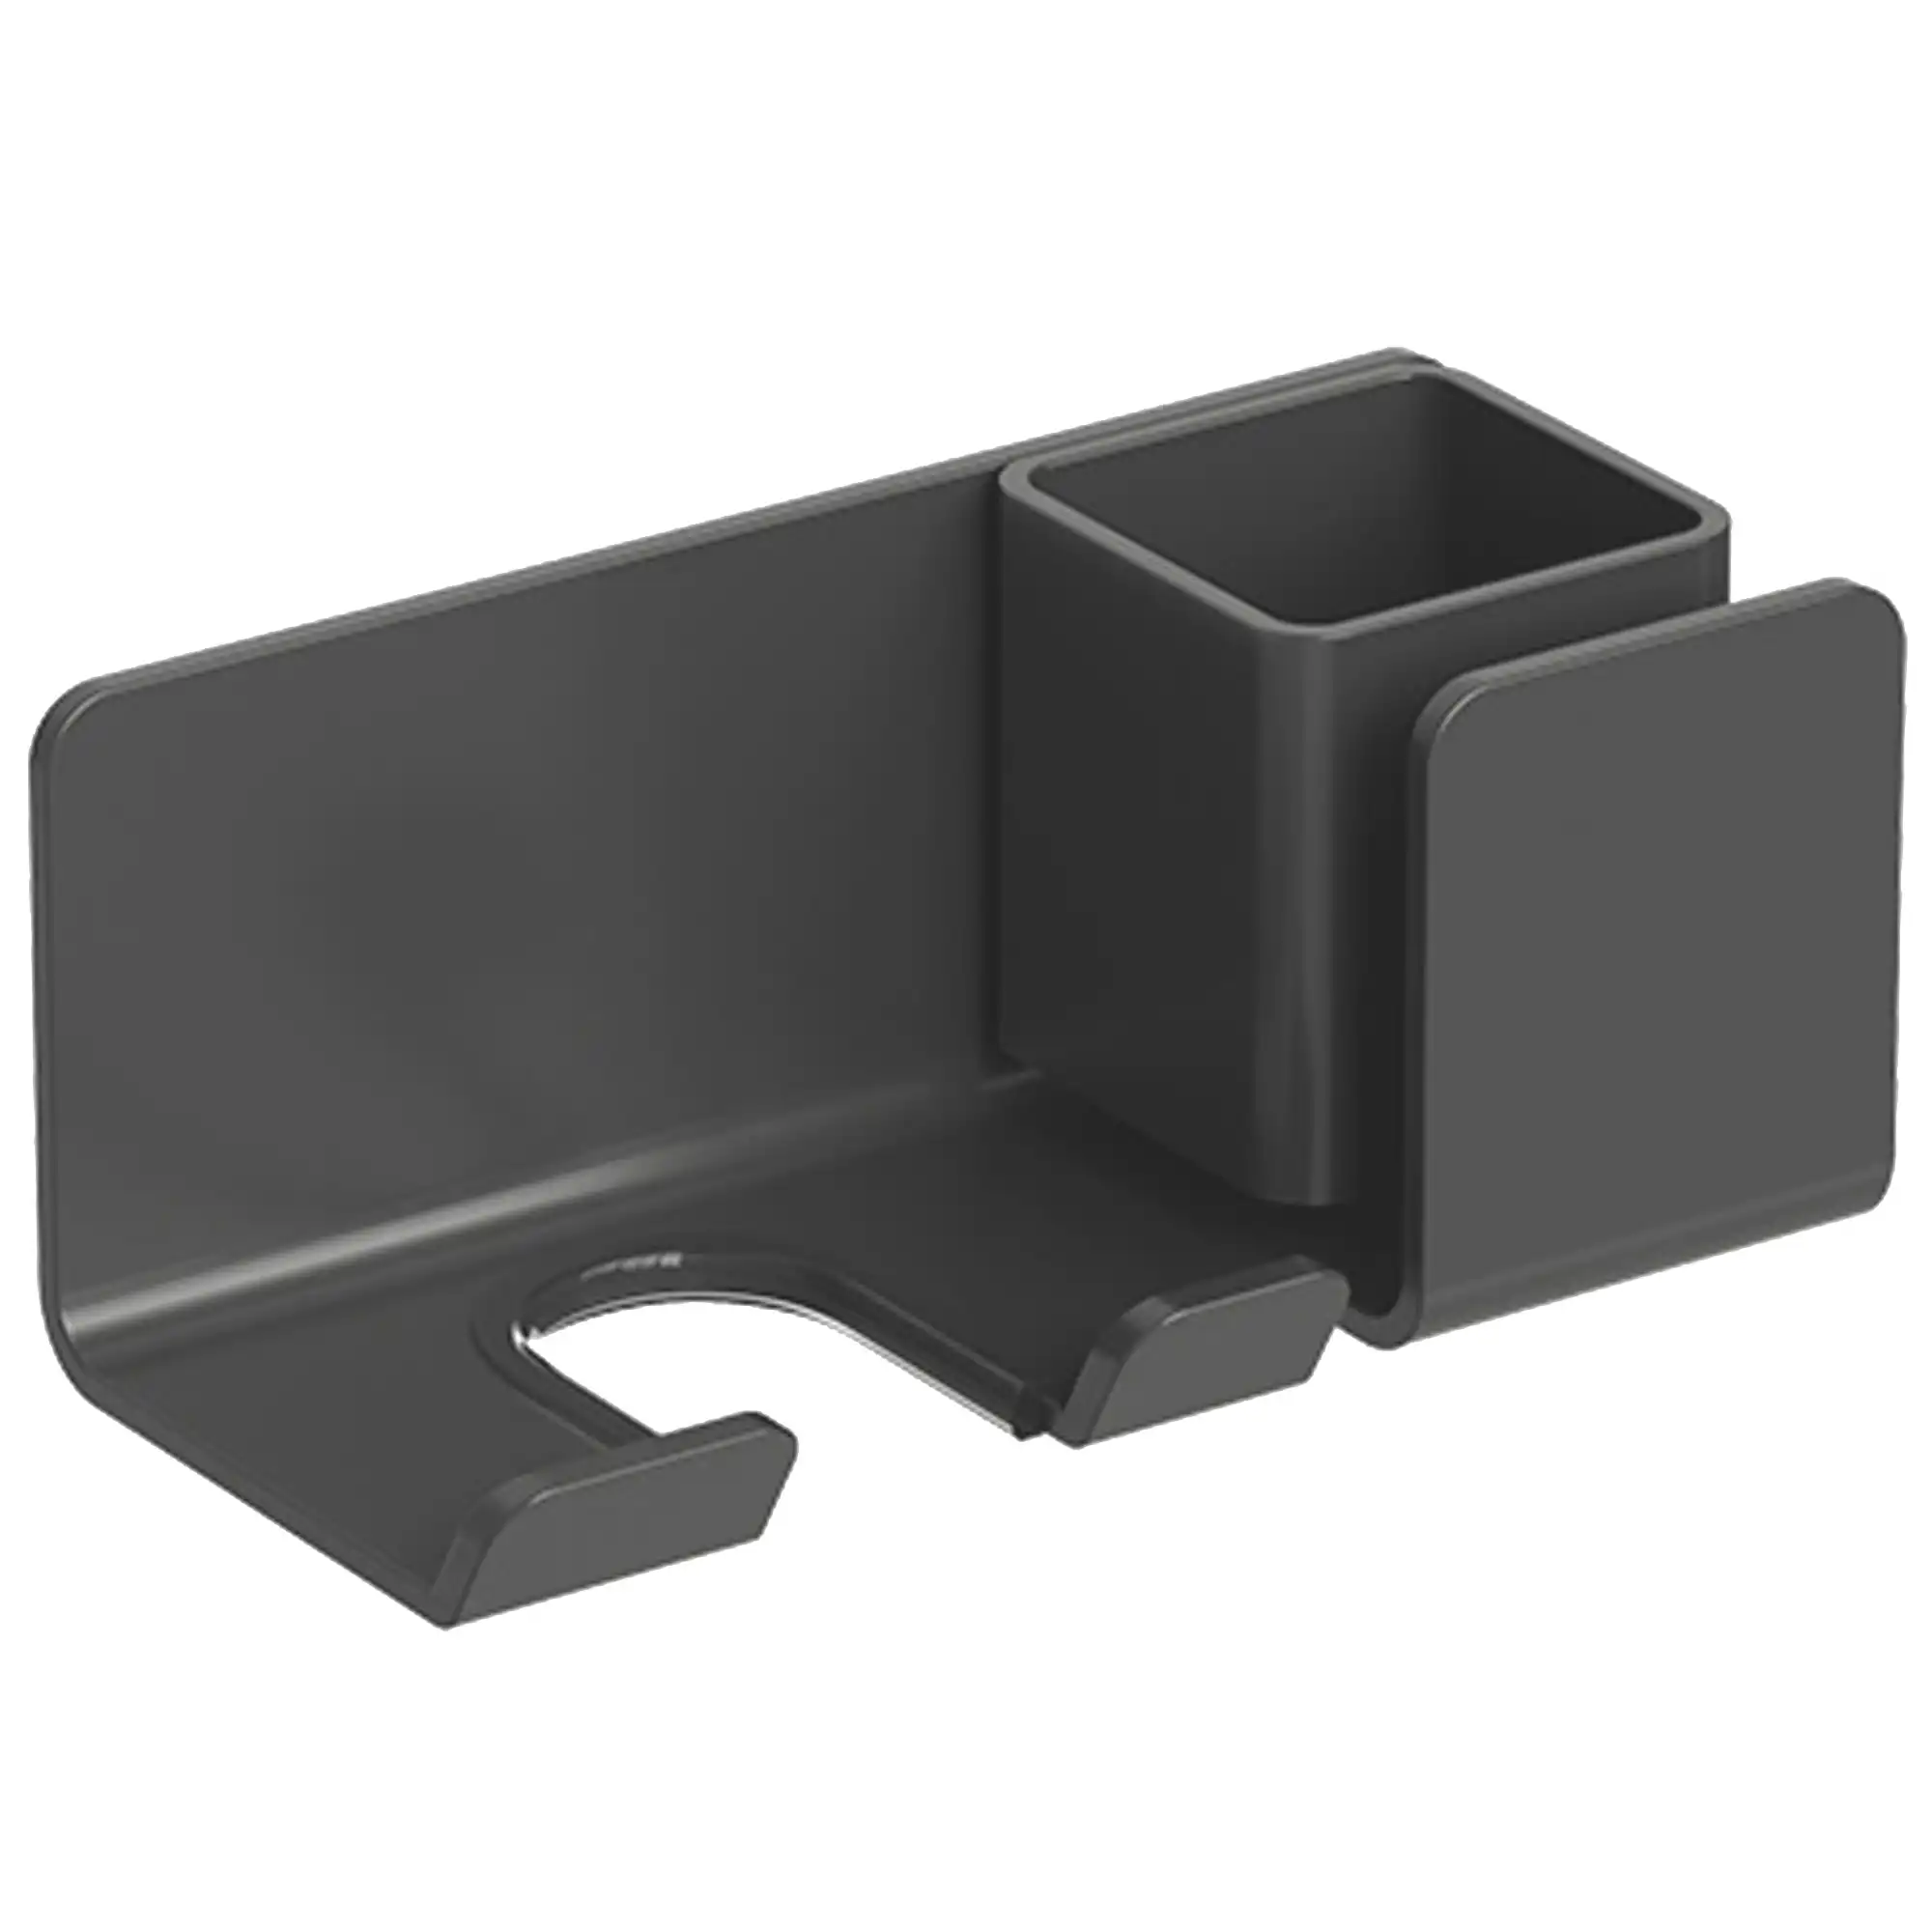 Hair Dryer Holder Caddy Aluminium Alloy Wall Mounted Bathroom Storage Shelf Rust Free - Carbon Grey